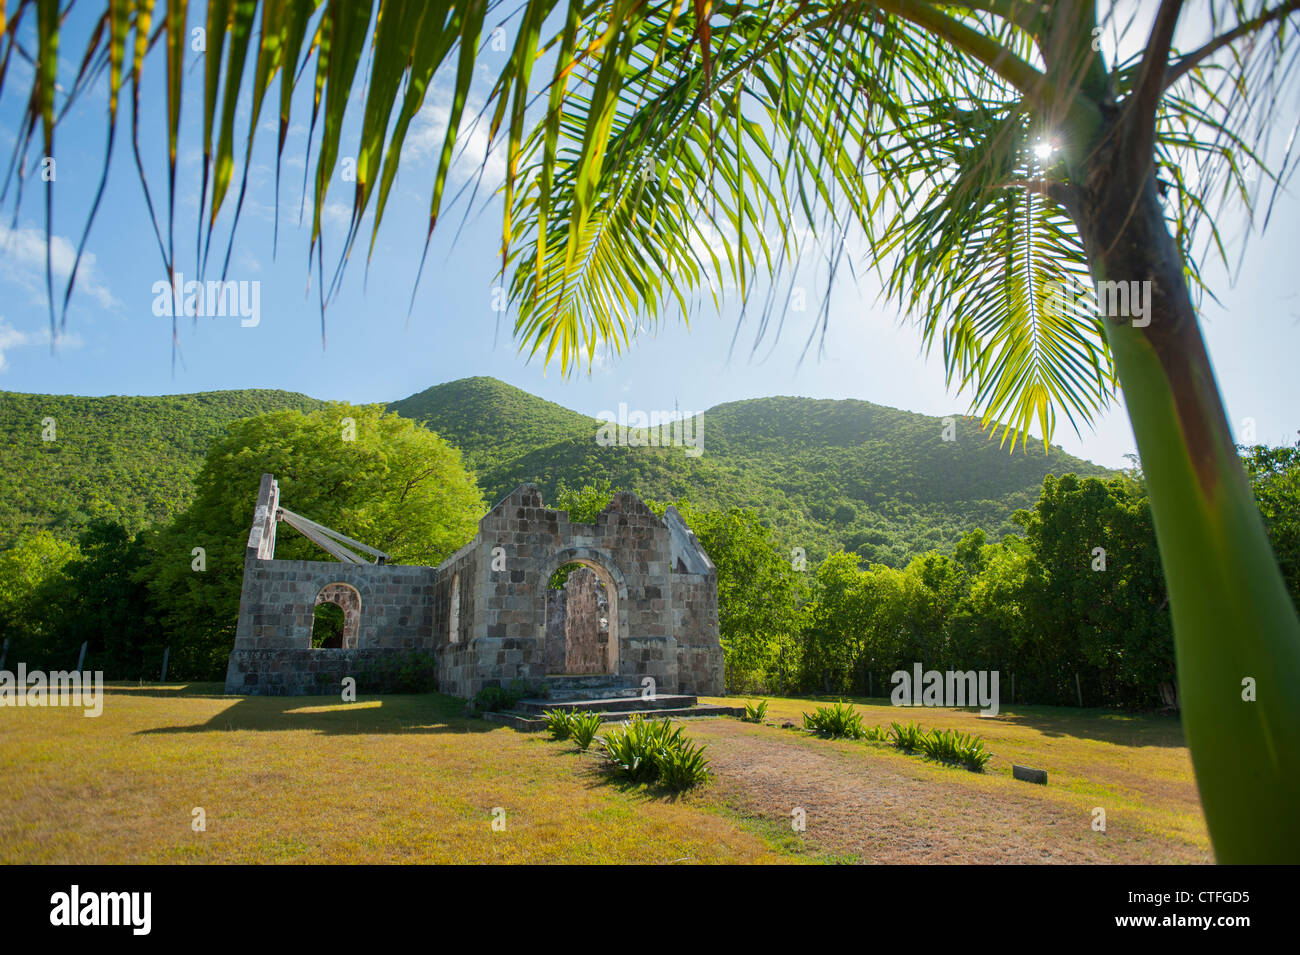 Caribbean West Indies Saint Kitts e Nevis - La Chiesa di Cottle - rovine storiche di una piccola chiesa costruita da una piantatrice Foto Stock